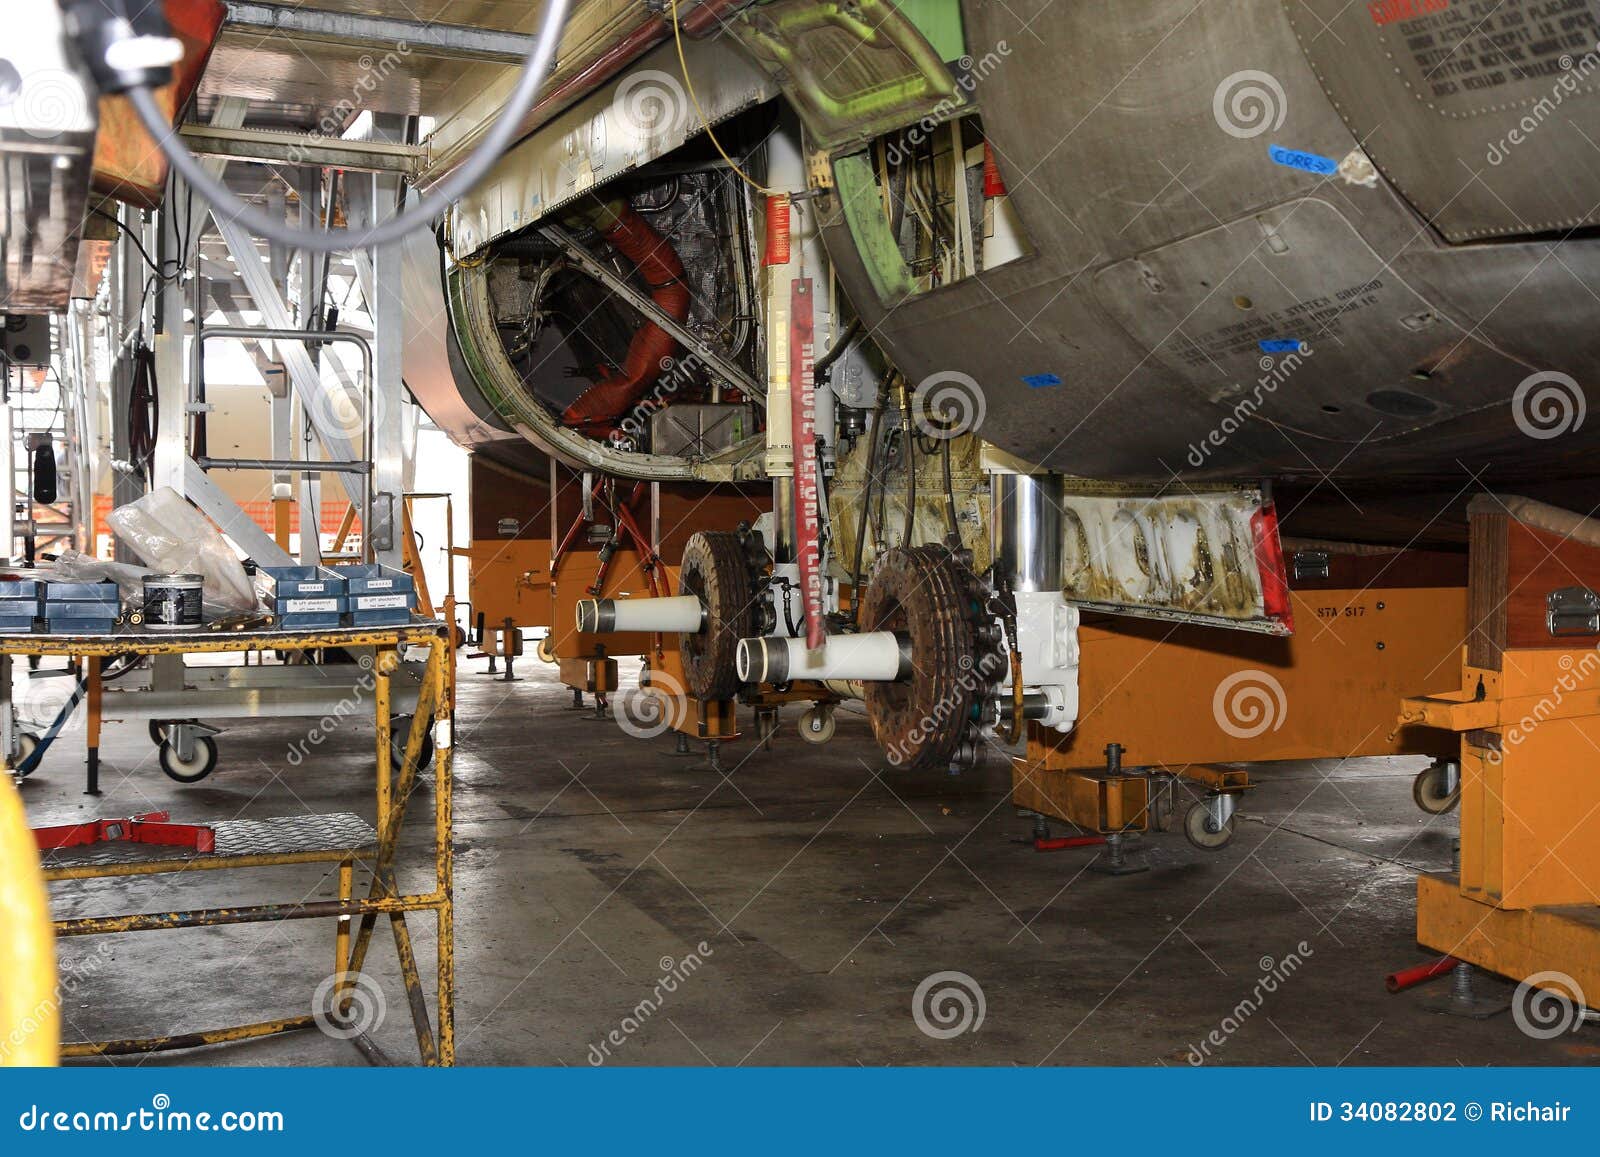 Manutenzione pesante. Dettaglio di un carrello di atterraggio degli aerei durante il mantenimento pesante di corrente alternata - trasporto di 130 Ercole.